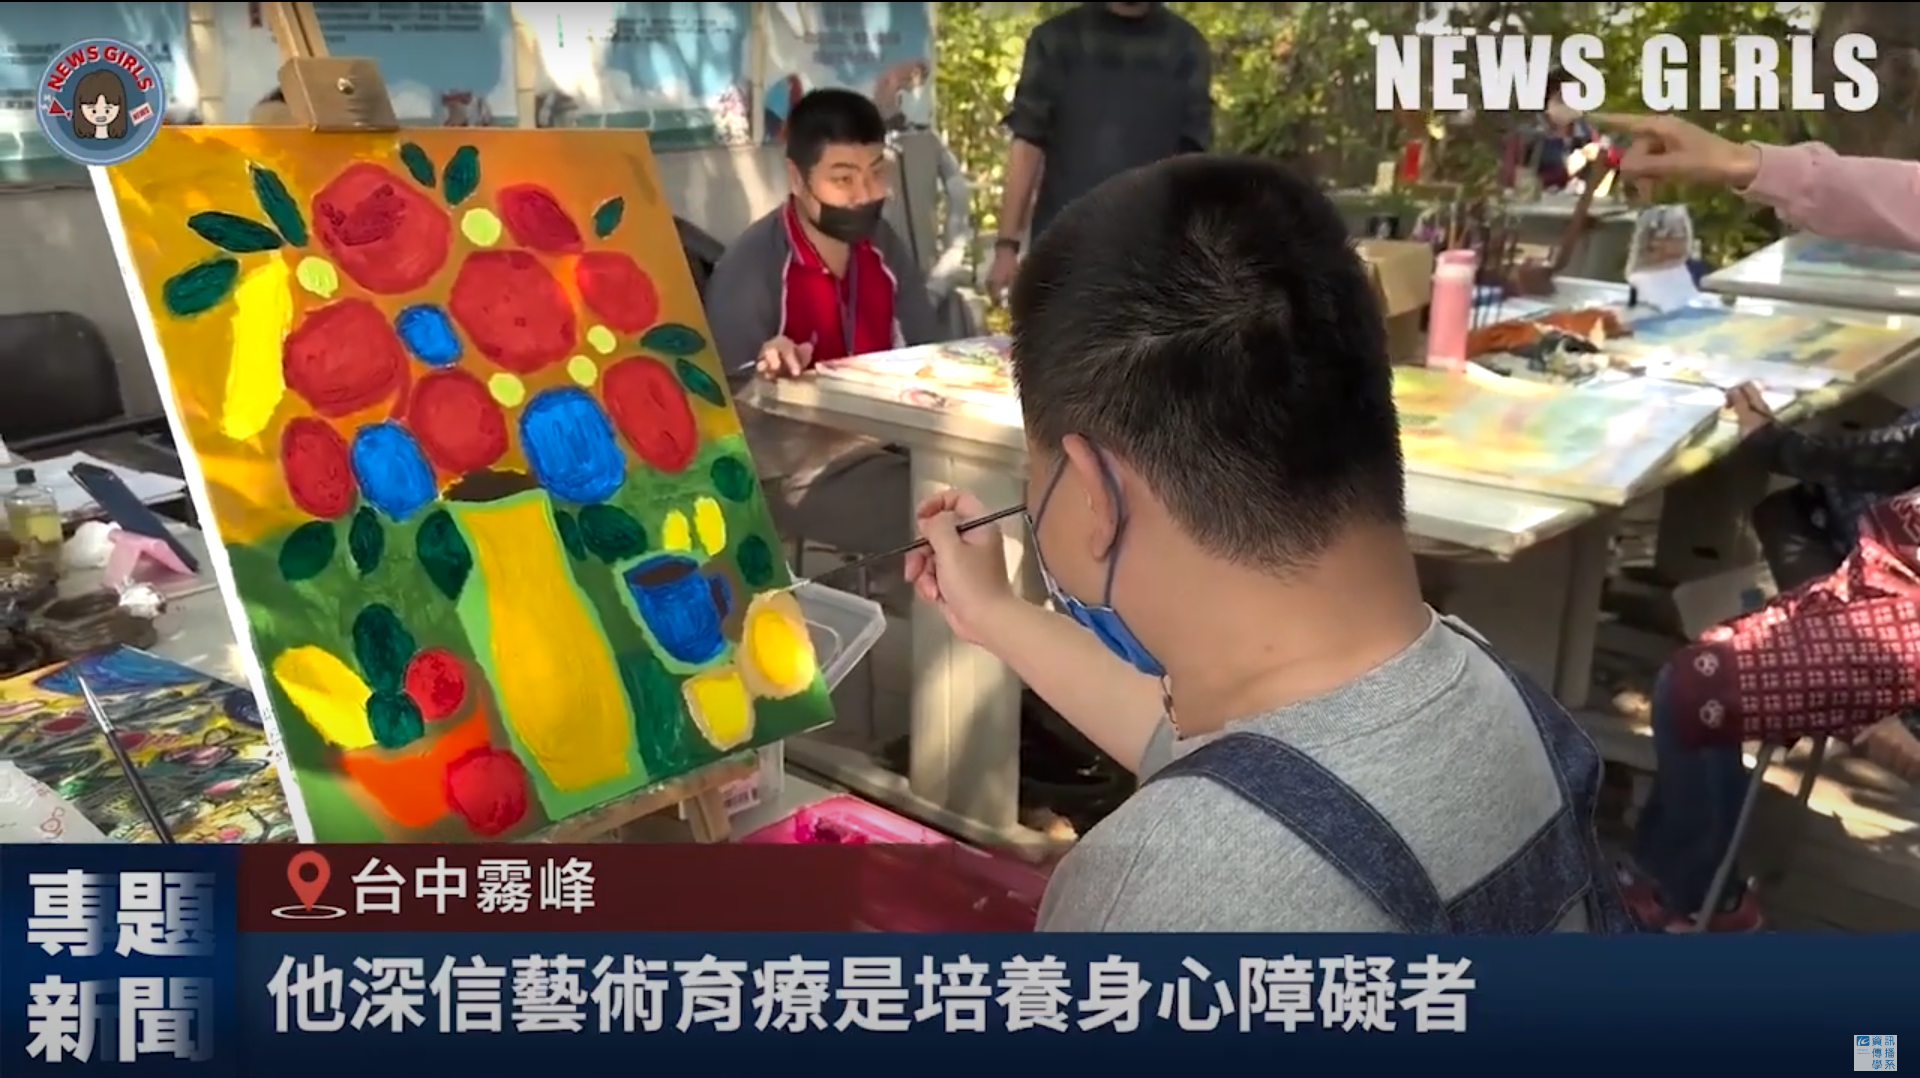 台灣畫話協會 協助身心障礙者畫出心裡話 找到屬於自己的聲音